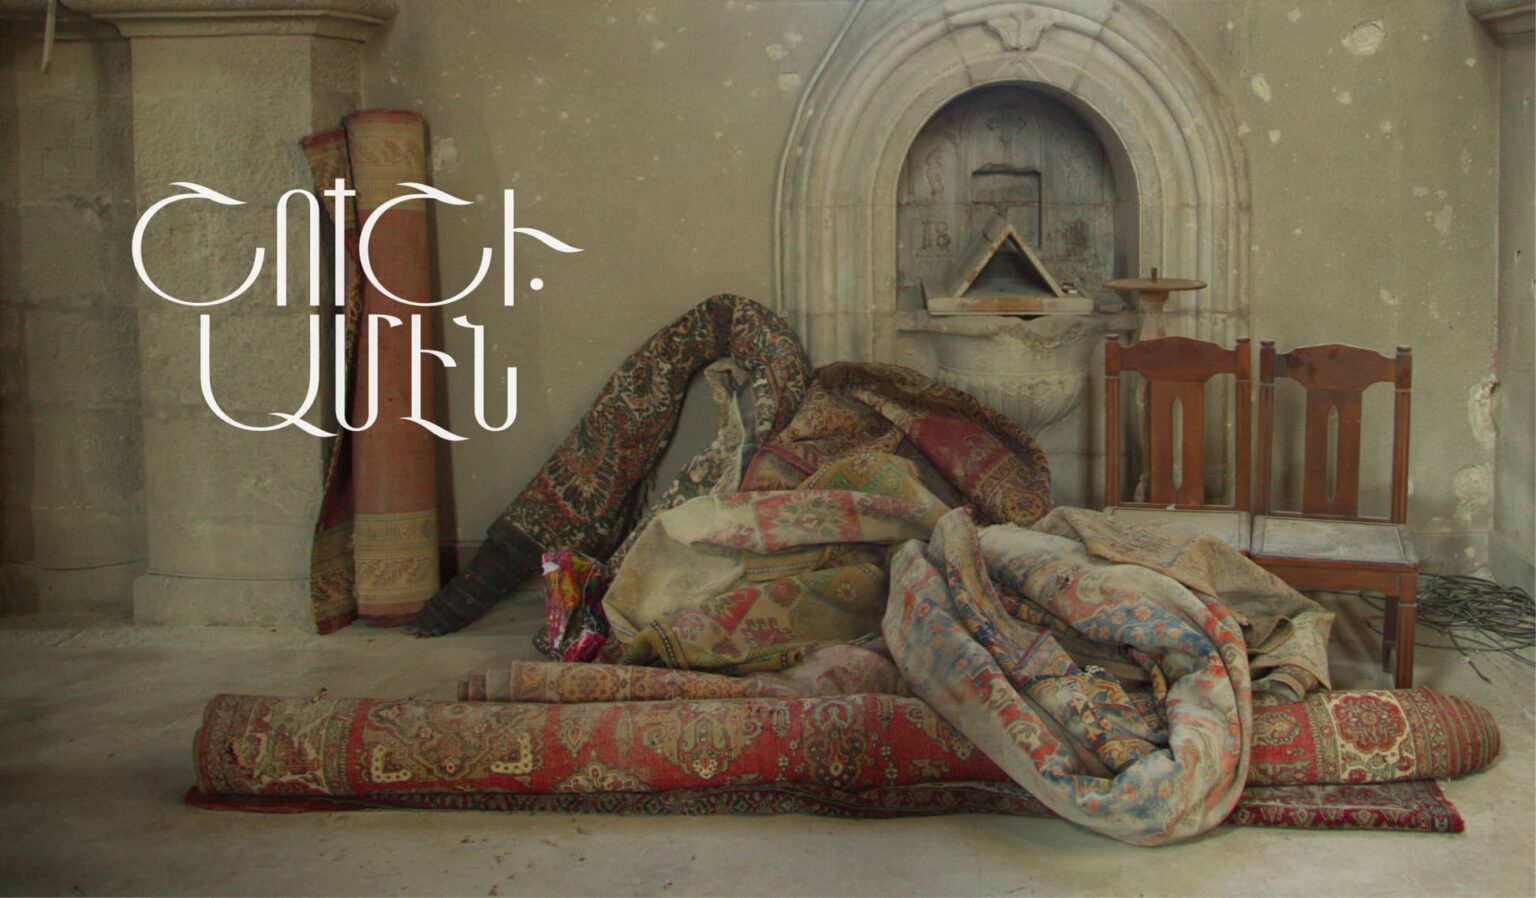 Ταινία ντοκιμαντέρ για το Σούσι! Αποδεικνύει την προσπάθεια του Αζερμπαϊτζάν να σβήσει την αρμενική ιστορία από την περιοχή του Αρτσάχ